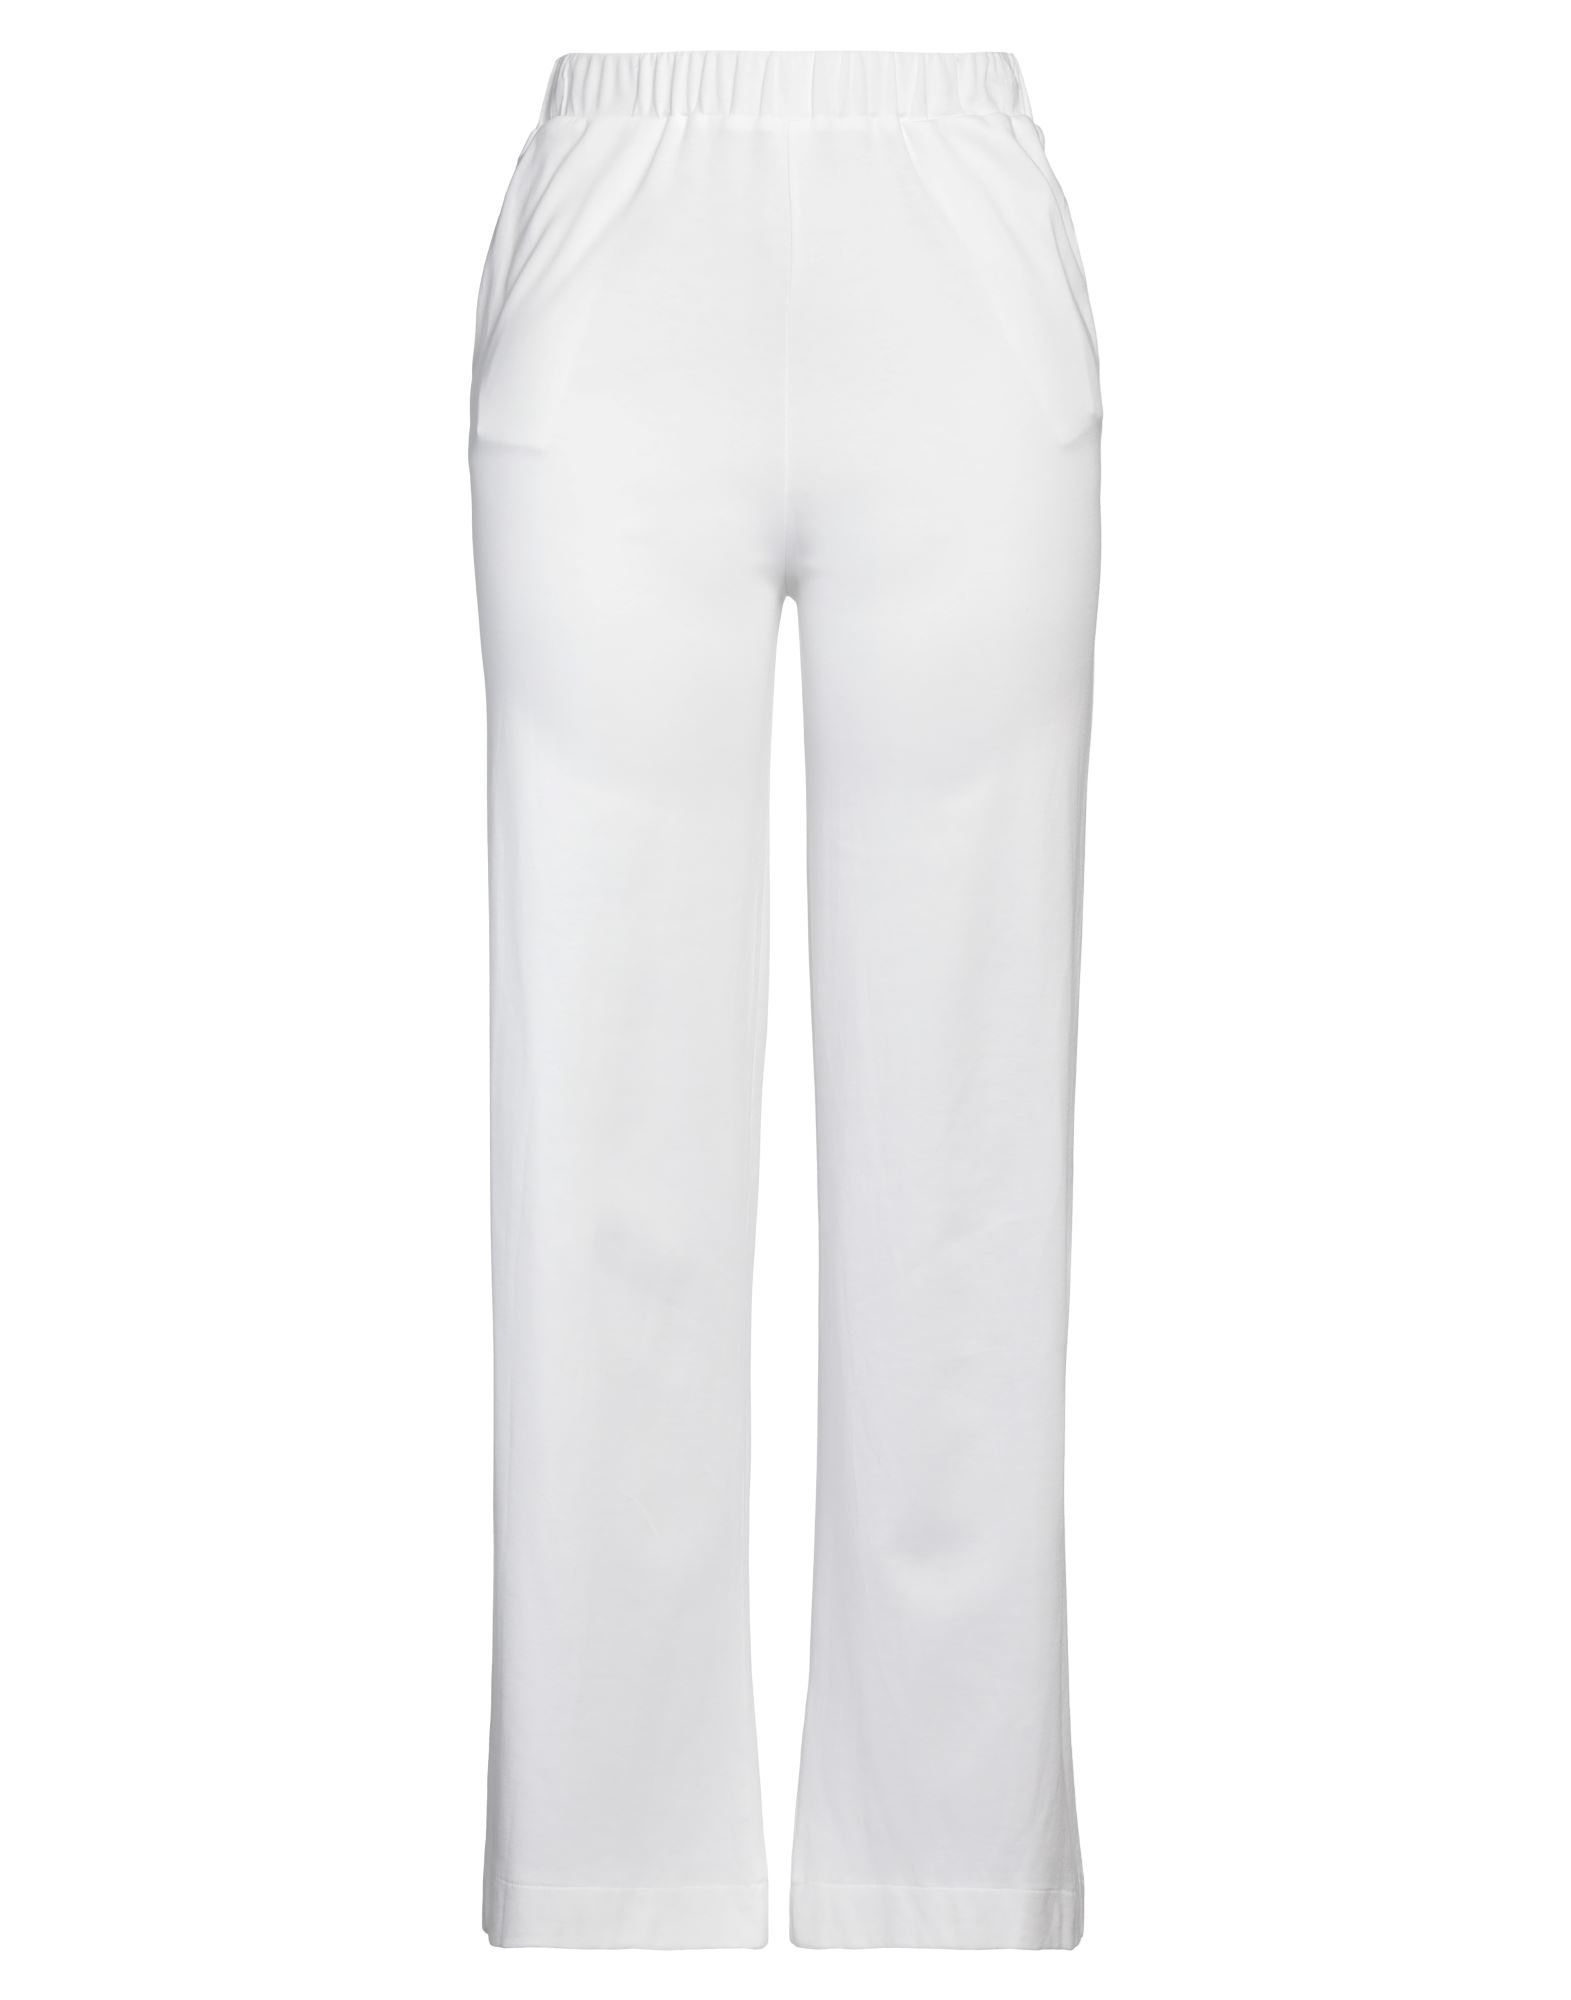 Gran Sasso Woman Pants White Size 6 Cotton, Polyamide